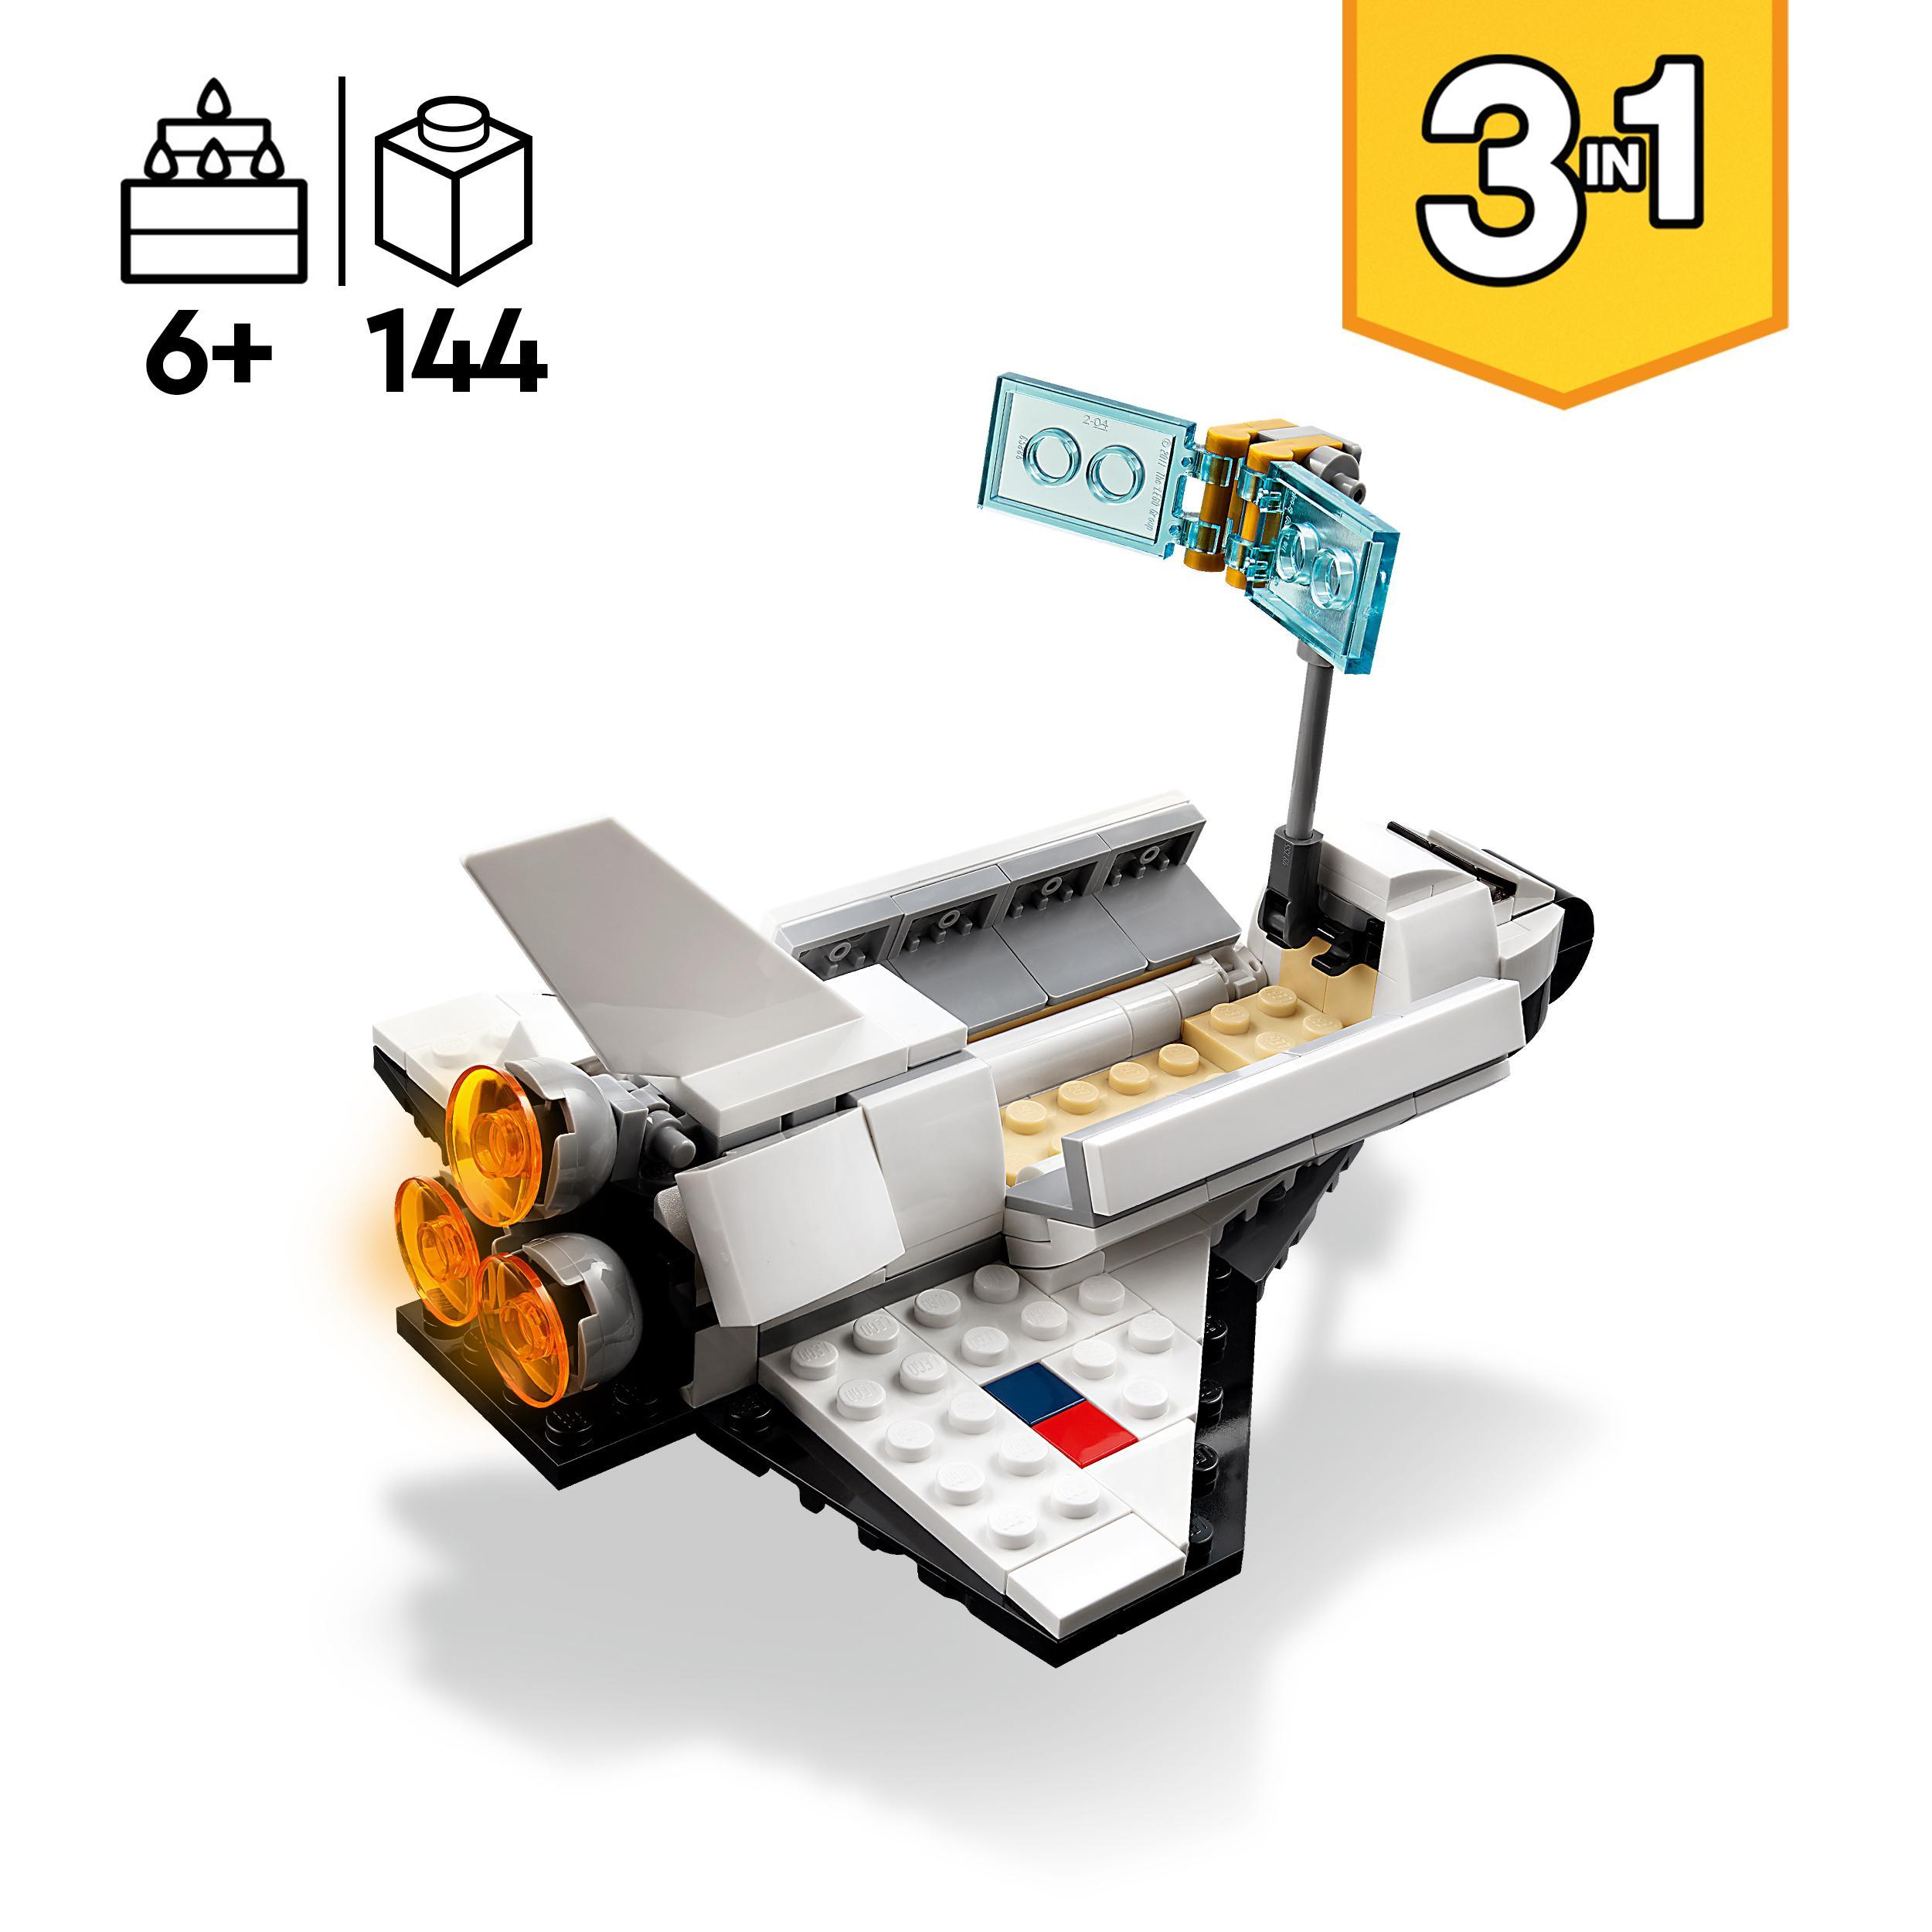 Lego creator 31134 space shuttle, set 3 in1 con astronauta e astronave giocattolo, giochi per bambini 6+ idea regalo creativa - LEGO CREATOR